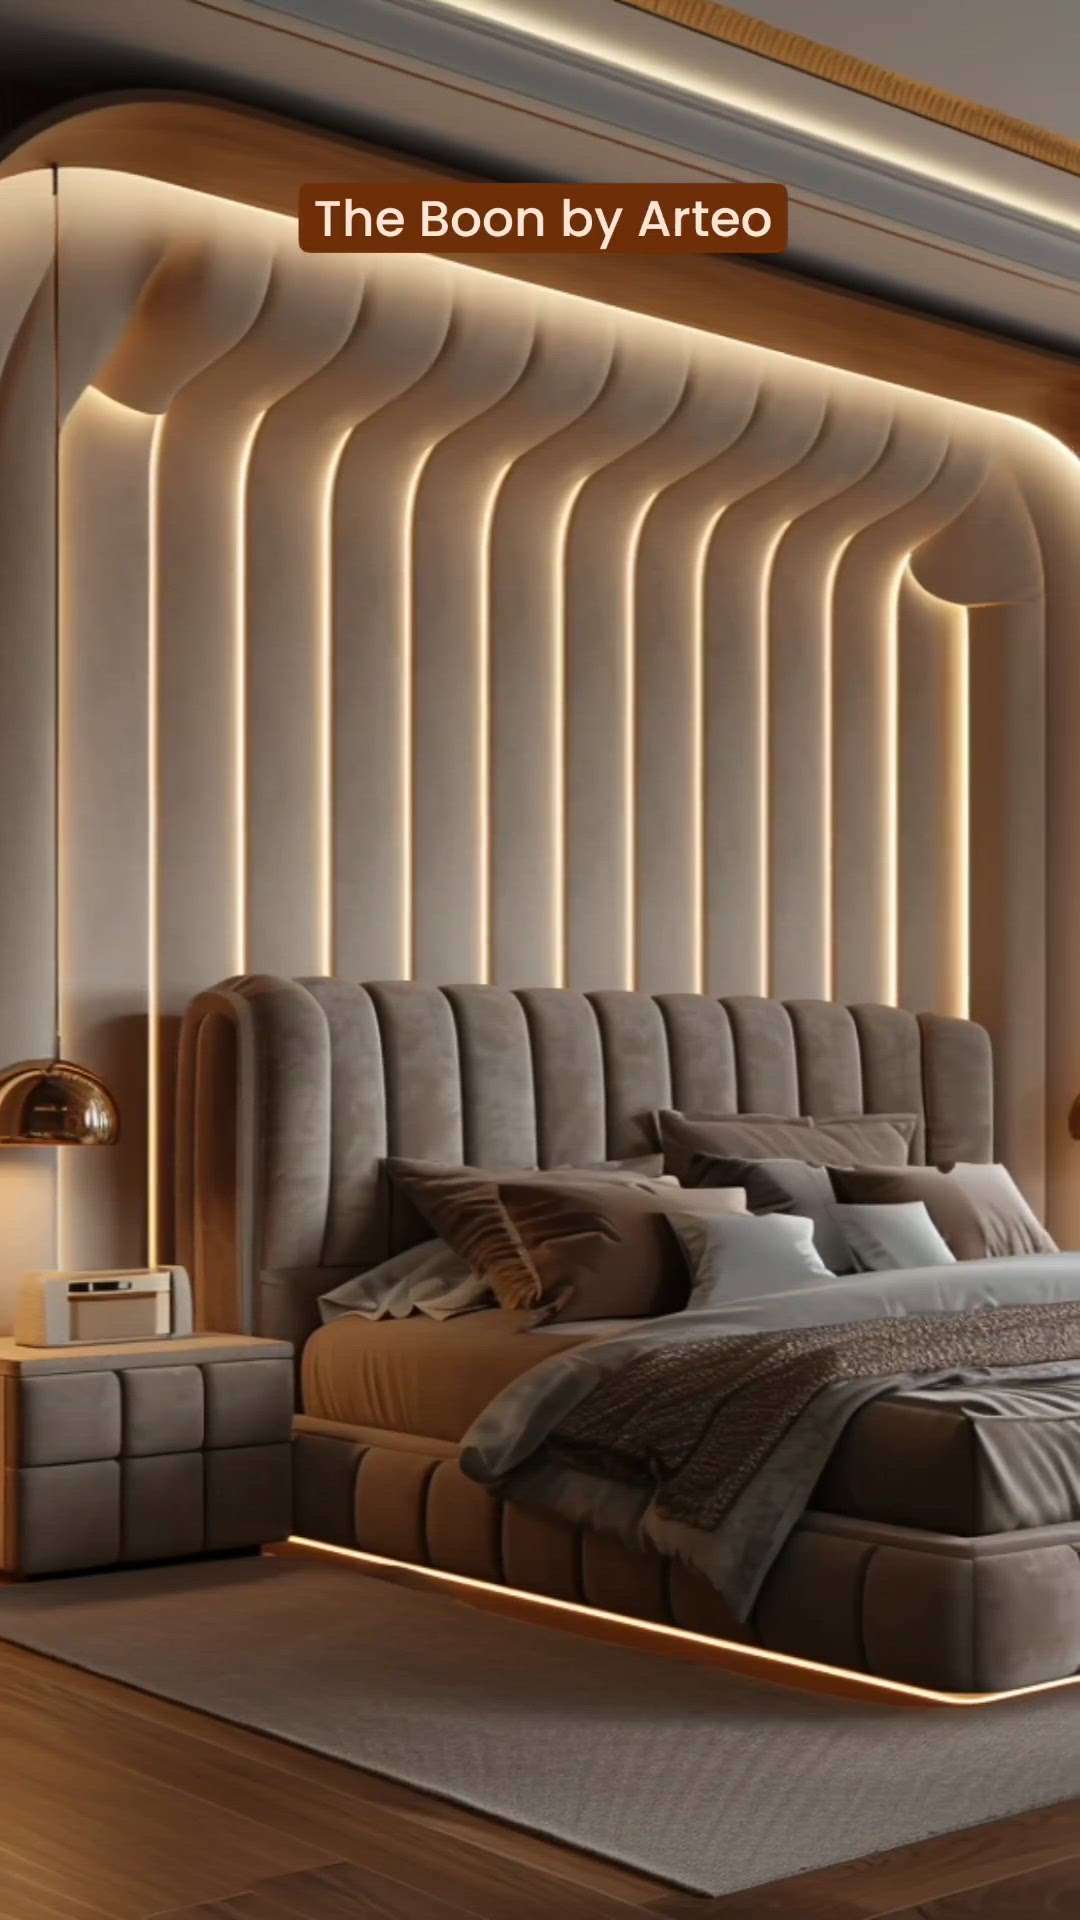 Modern Bed
#BedroomDecor 
#MasterBedroom 
#BedroomDesigns 
#BedroomIdeas 
#ModernBedMaking 
#bedroominterio 
#tridentinfrastructures